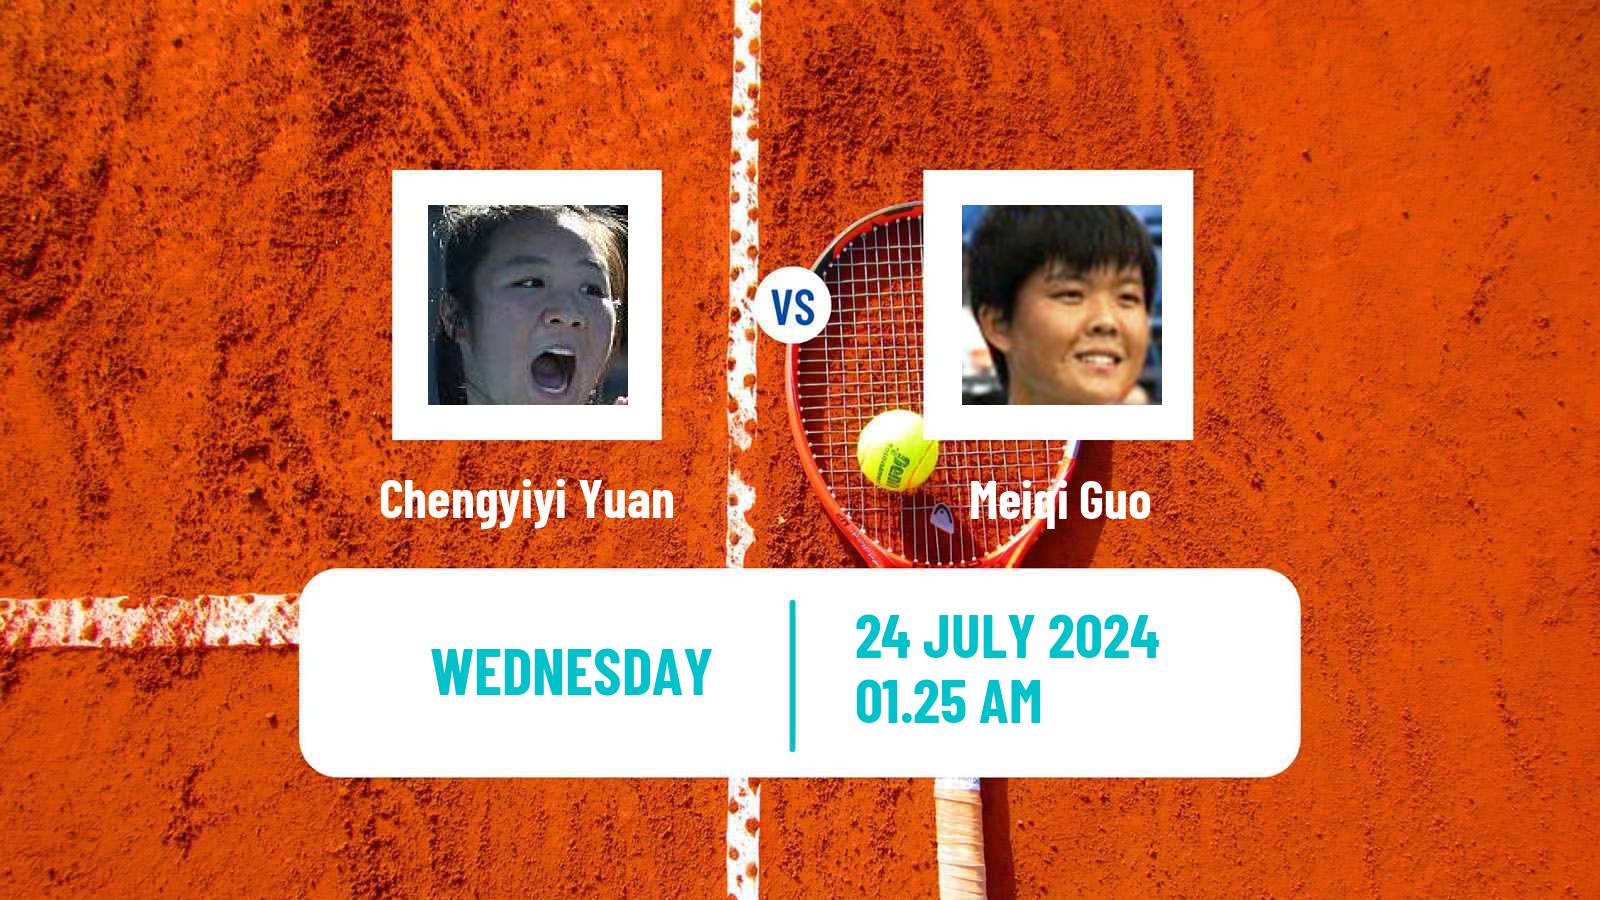 Tennis ITF W35 Naiman Women Chengyiyi Yuan - Meiqi Guo